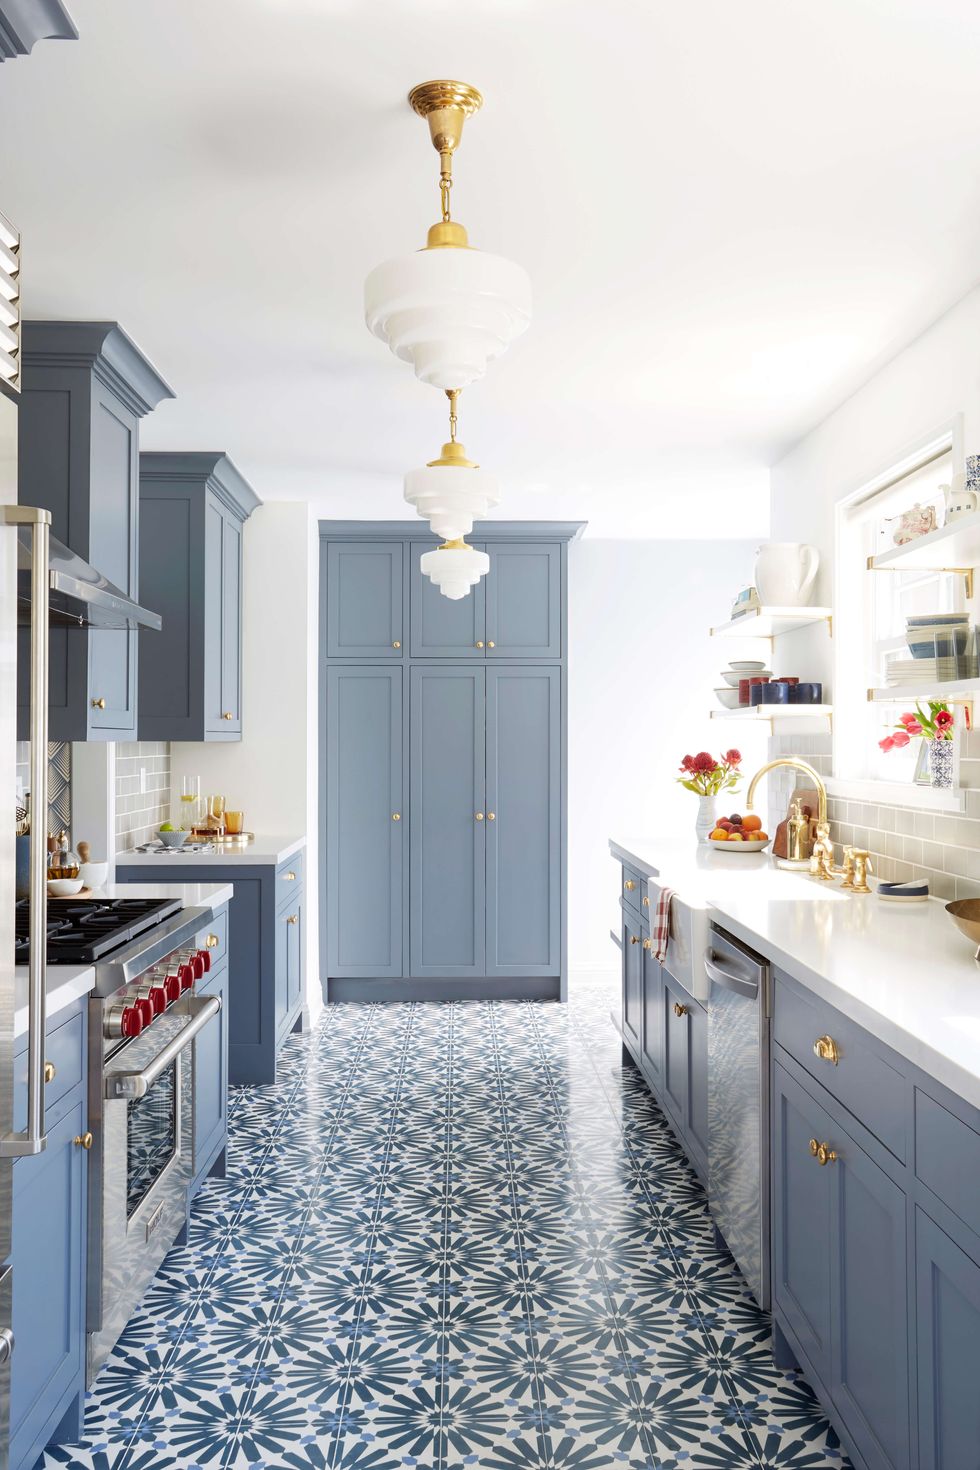 Không gian phòng bếp dài và hẹp trở nên tươi tắn nhờ gạch lát sàn có hoa văn màu xanh lam nổi bật. Khi kết hợp cùng tone màu xanh xám nhạt của hệ thống tủ lưu trữ càng thêm phần quyến rũ.